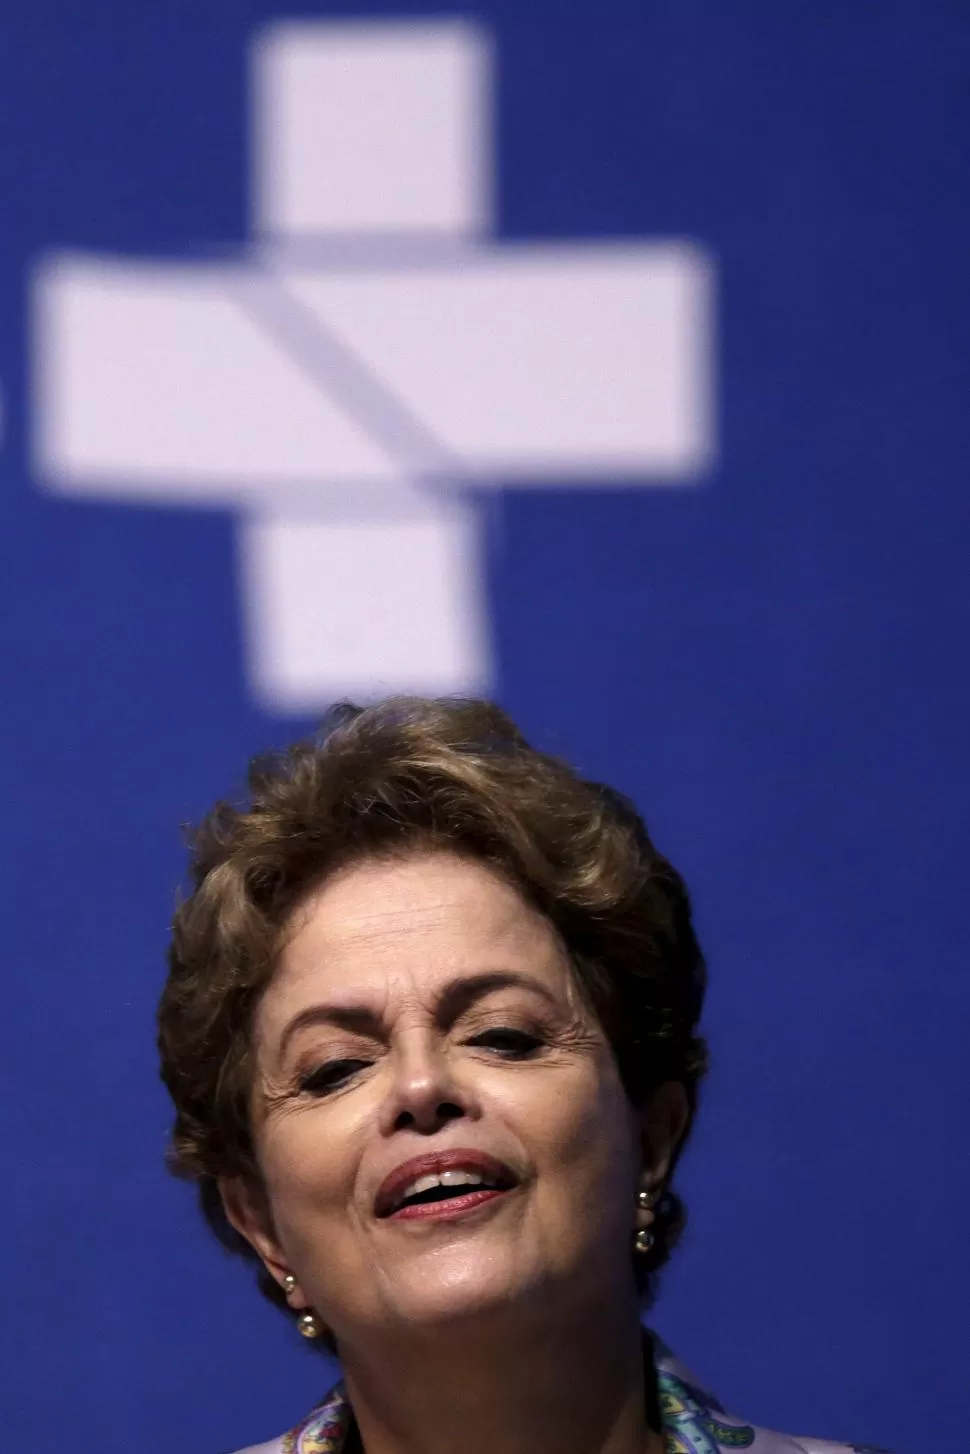 SIN VALOR. Dilma considera improcedentes e inconsistentes las denuncias. reuters